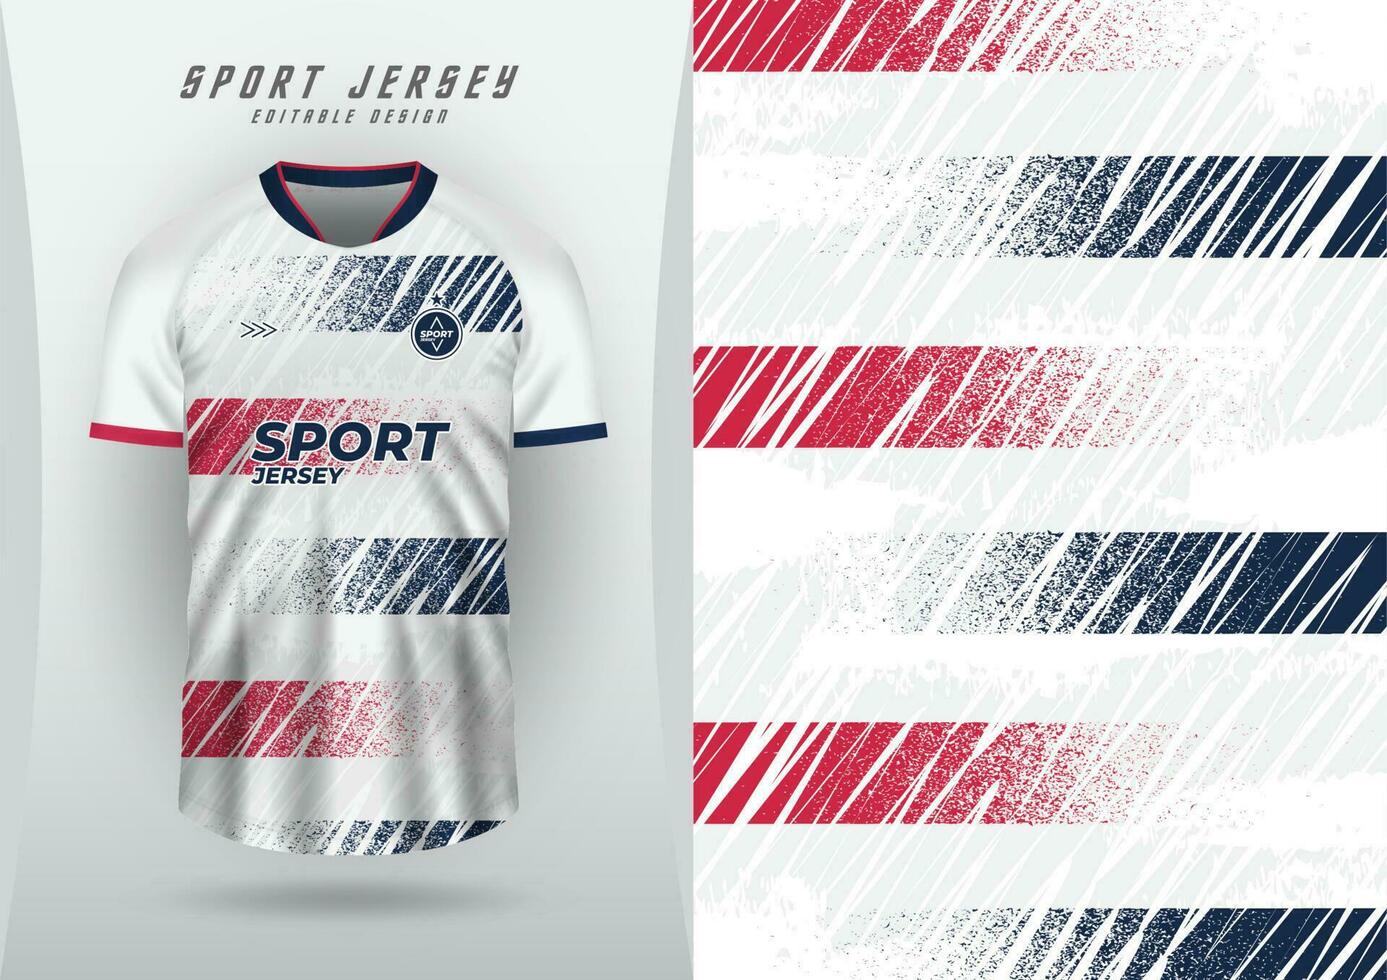 Hintergrund zum Sport Jersey Fußball Jersey Laufen Jersey Rennen Jersey Korn Muster rot Streifen Marine Blau vektor